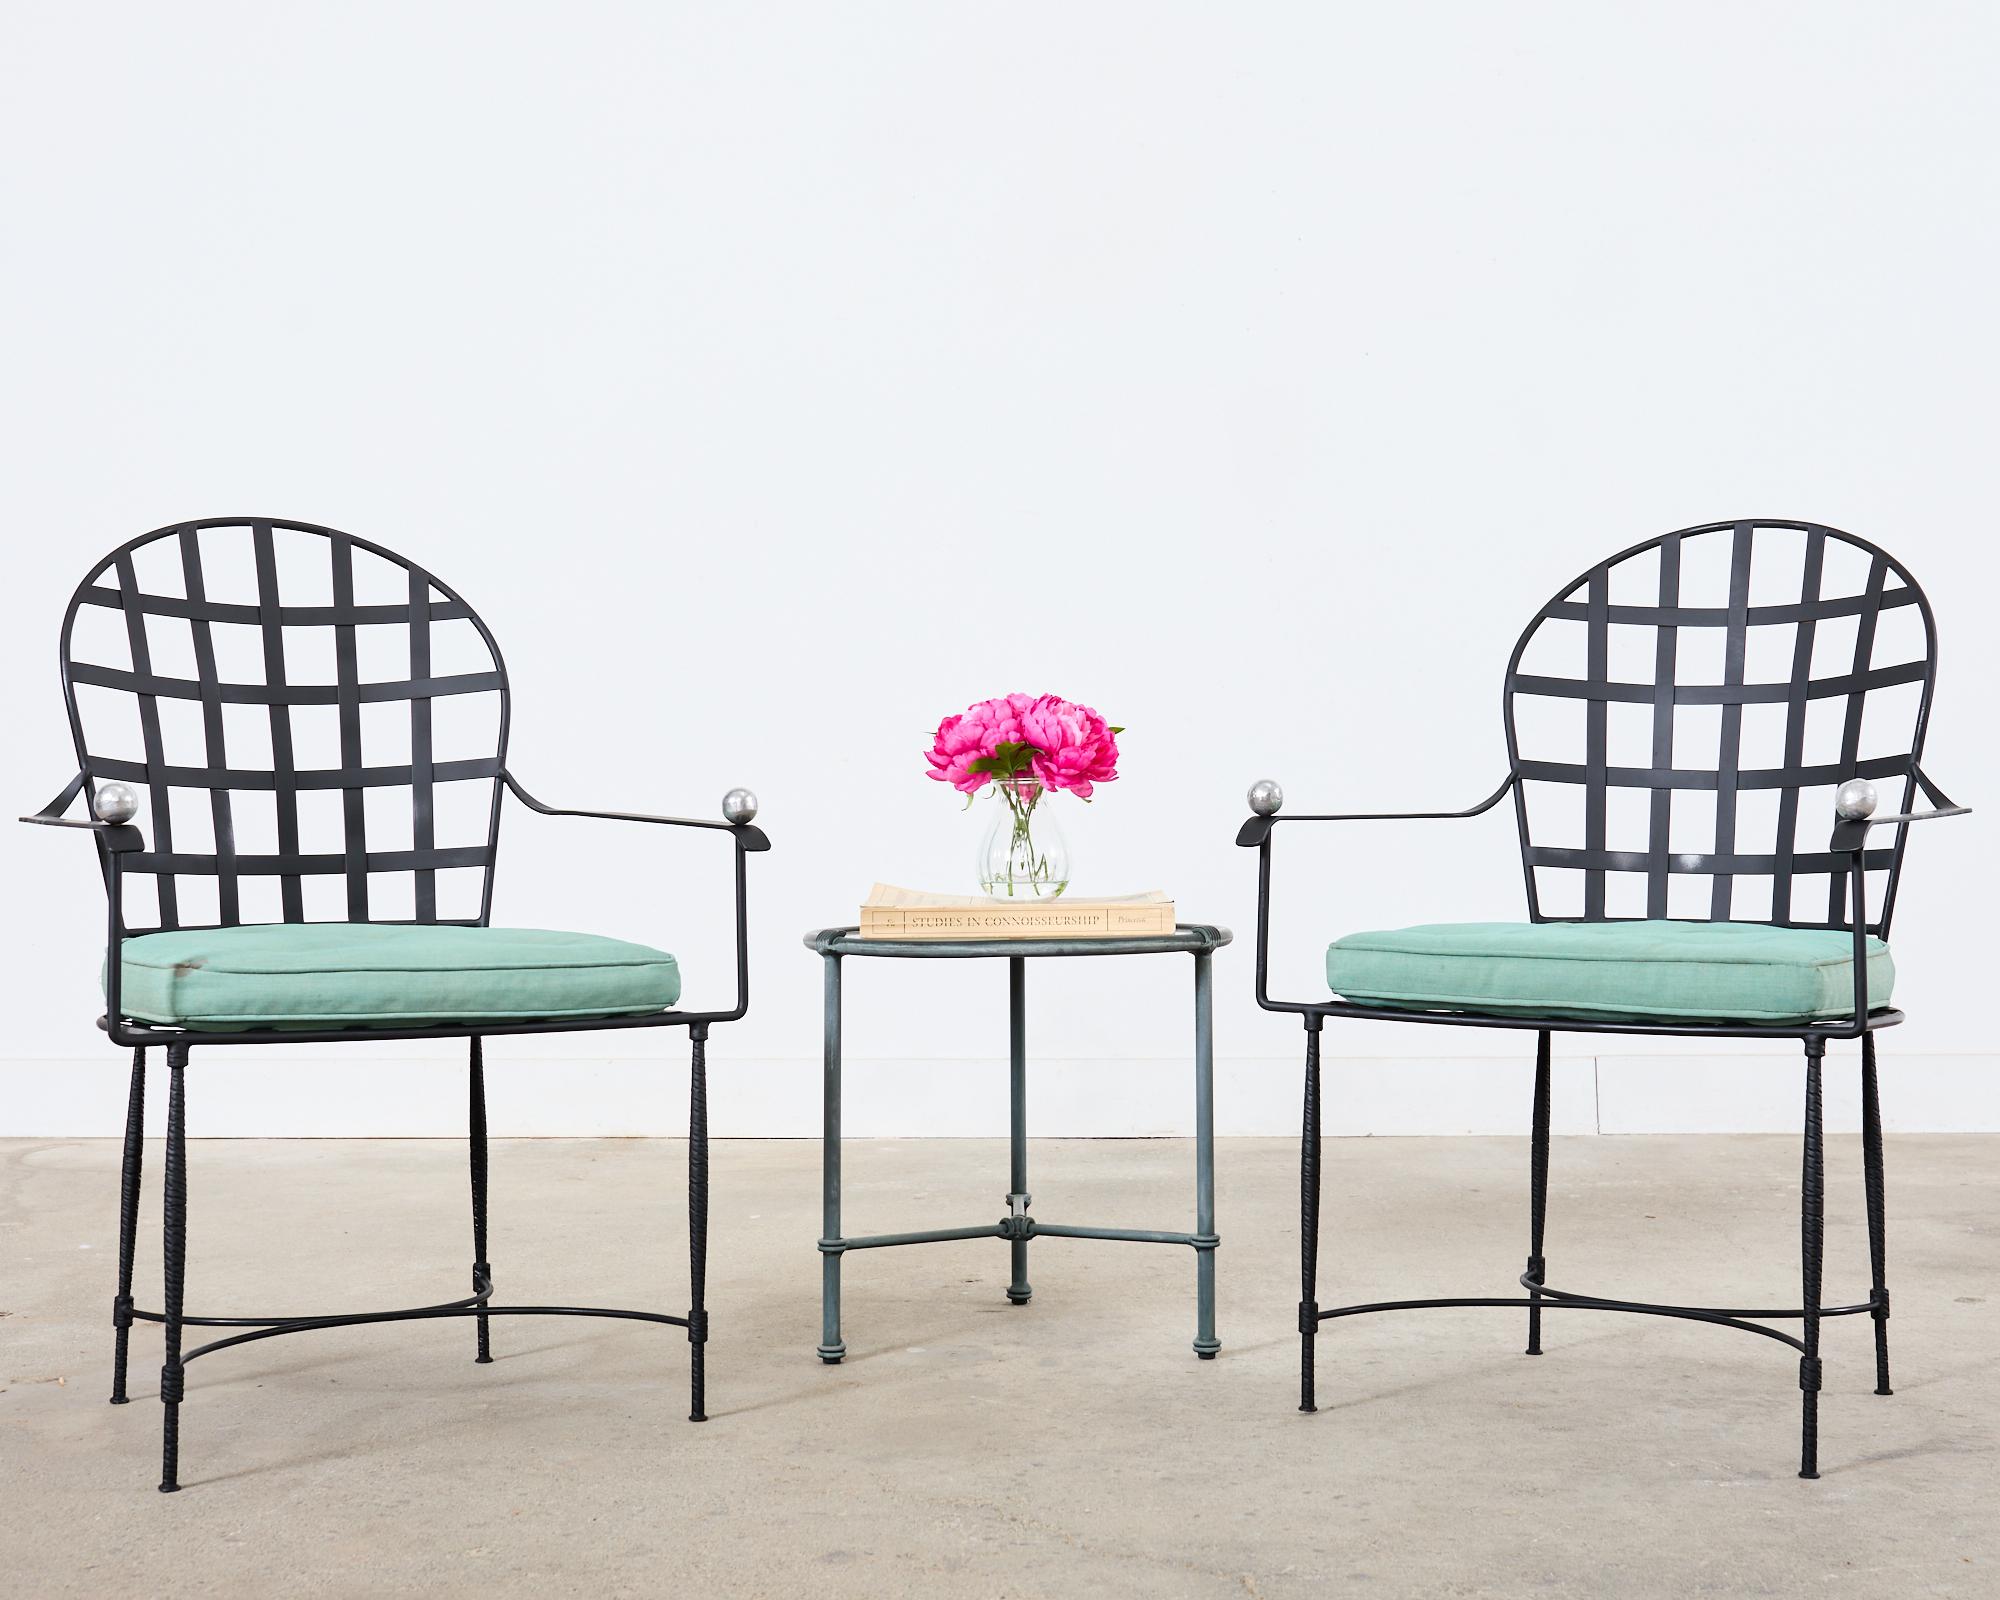 Ikonisches Paar eiserne Sessel für Terrasse und Garten, hergestellt nach der Art und dem Stil von Mario Papperzini für John Salterini. Die Inspiration für den Janus et Cie-Stuhl Amalfi mit runder Rückenlehne, Sitz und Rückenlehne mit Gittereinsatz